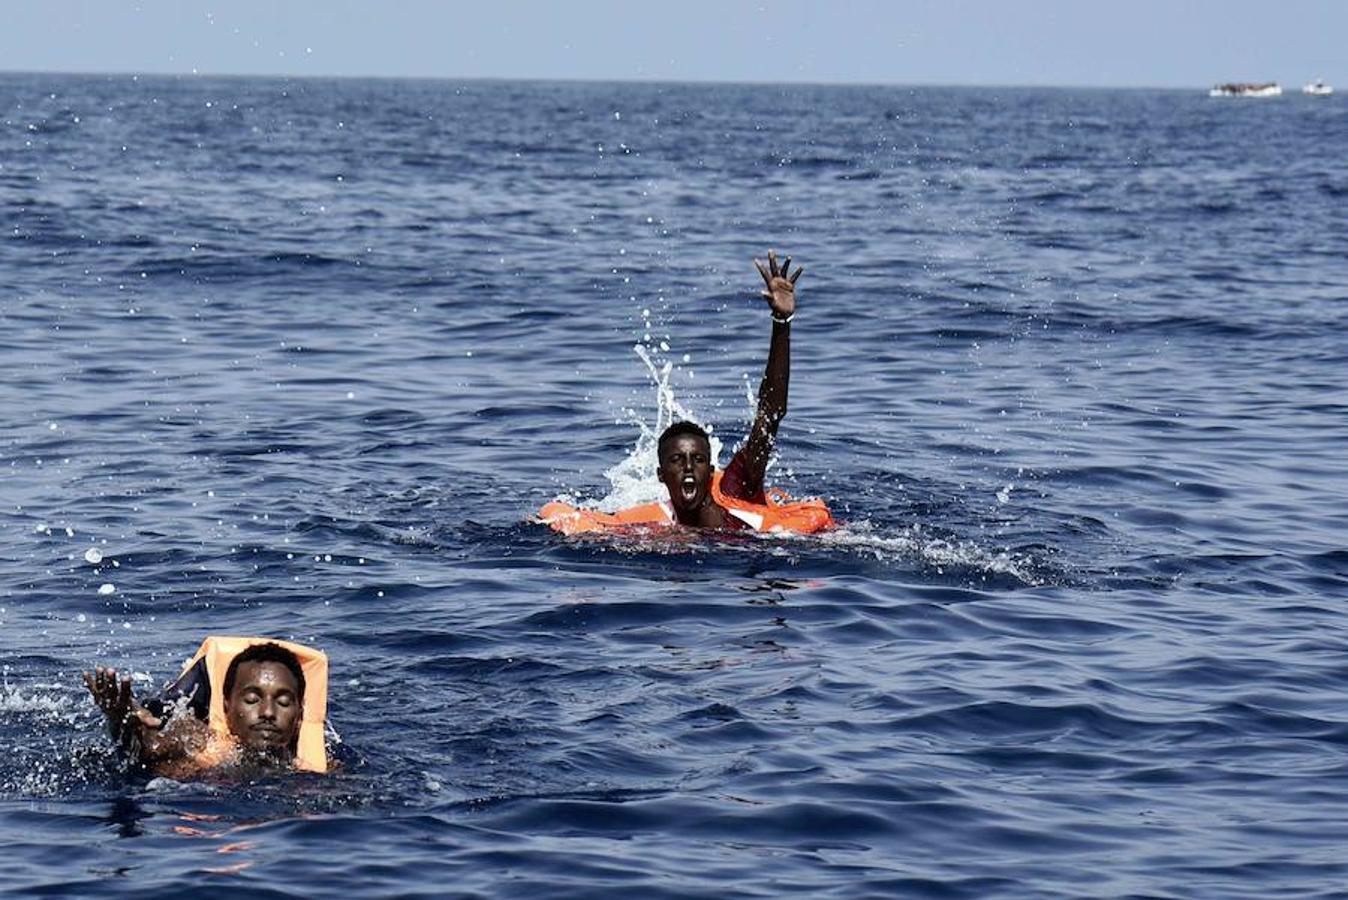 Los dos extranjeros de la imagen fueron rescatados del agua por la ONG Proactiva Open Arms